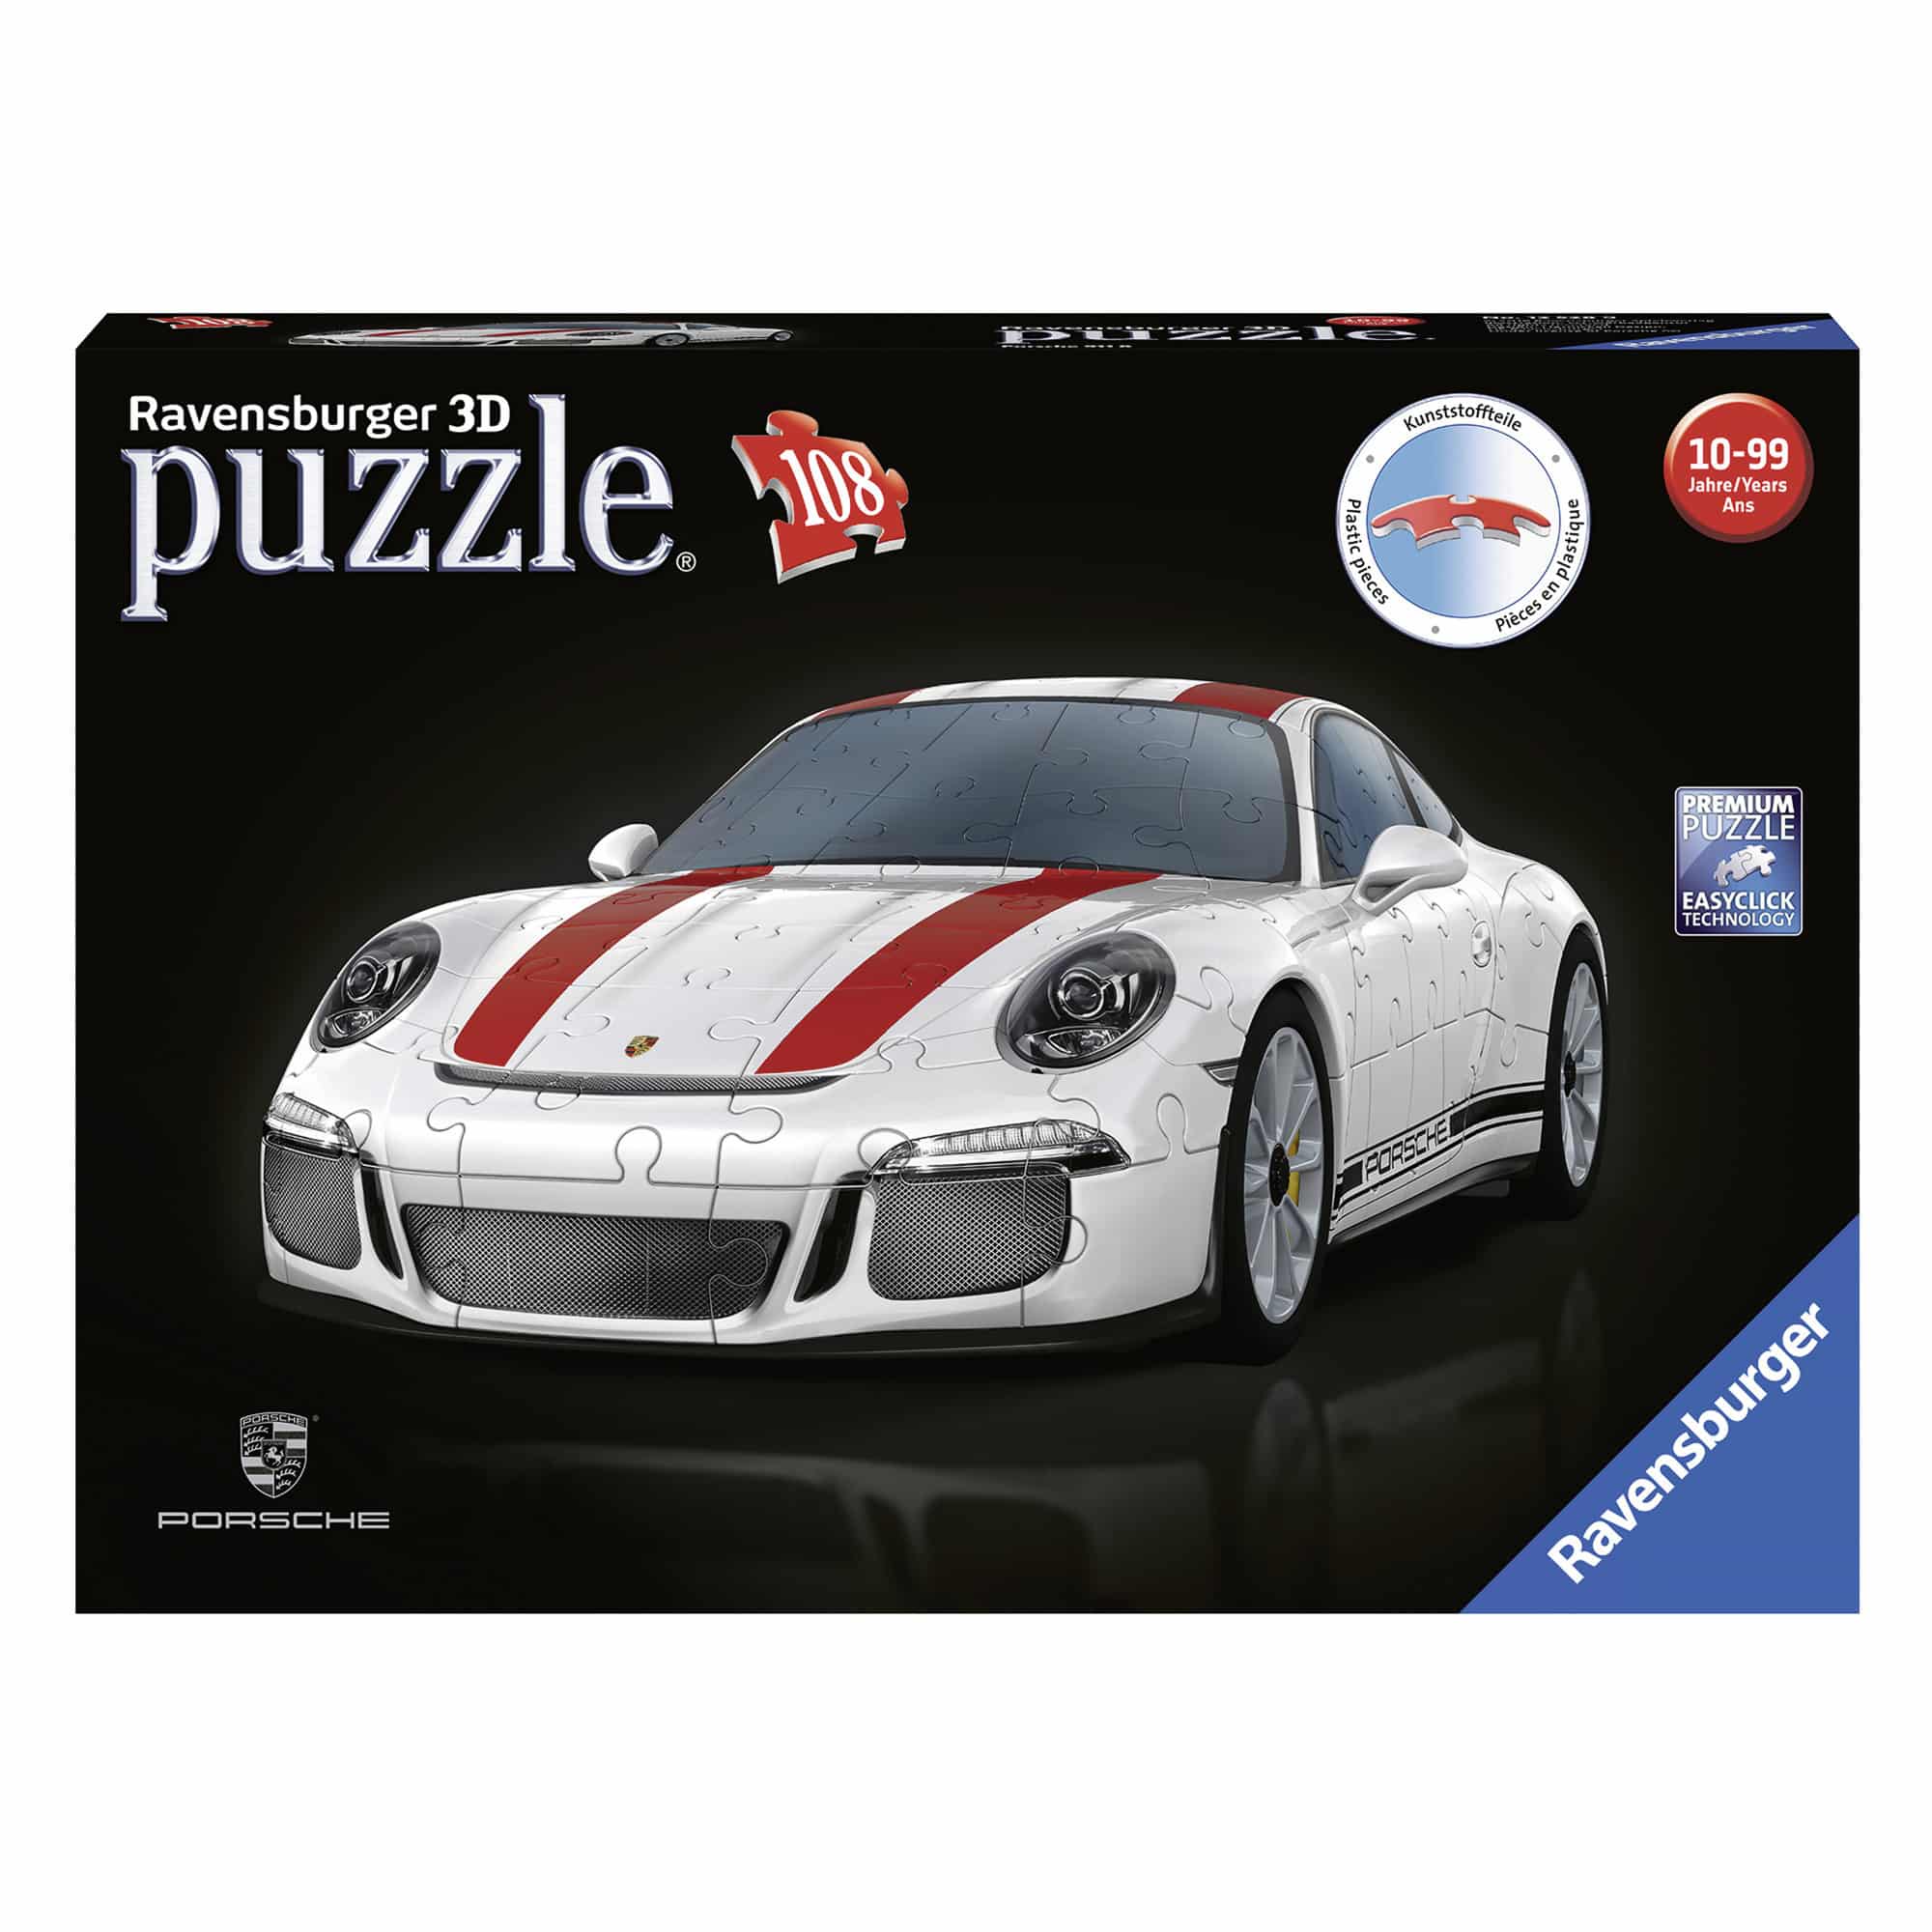 Ravensburger 3D Puzzle - Porsche 911R - 108 Pieces